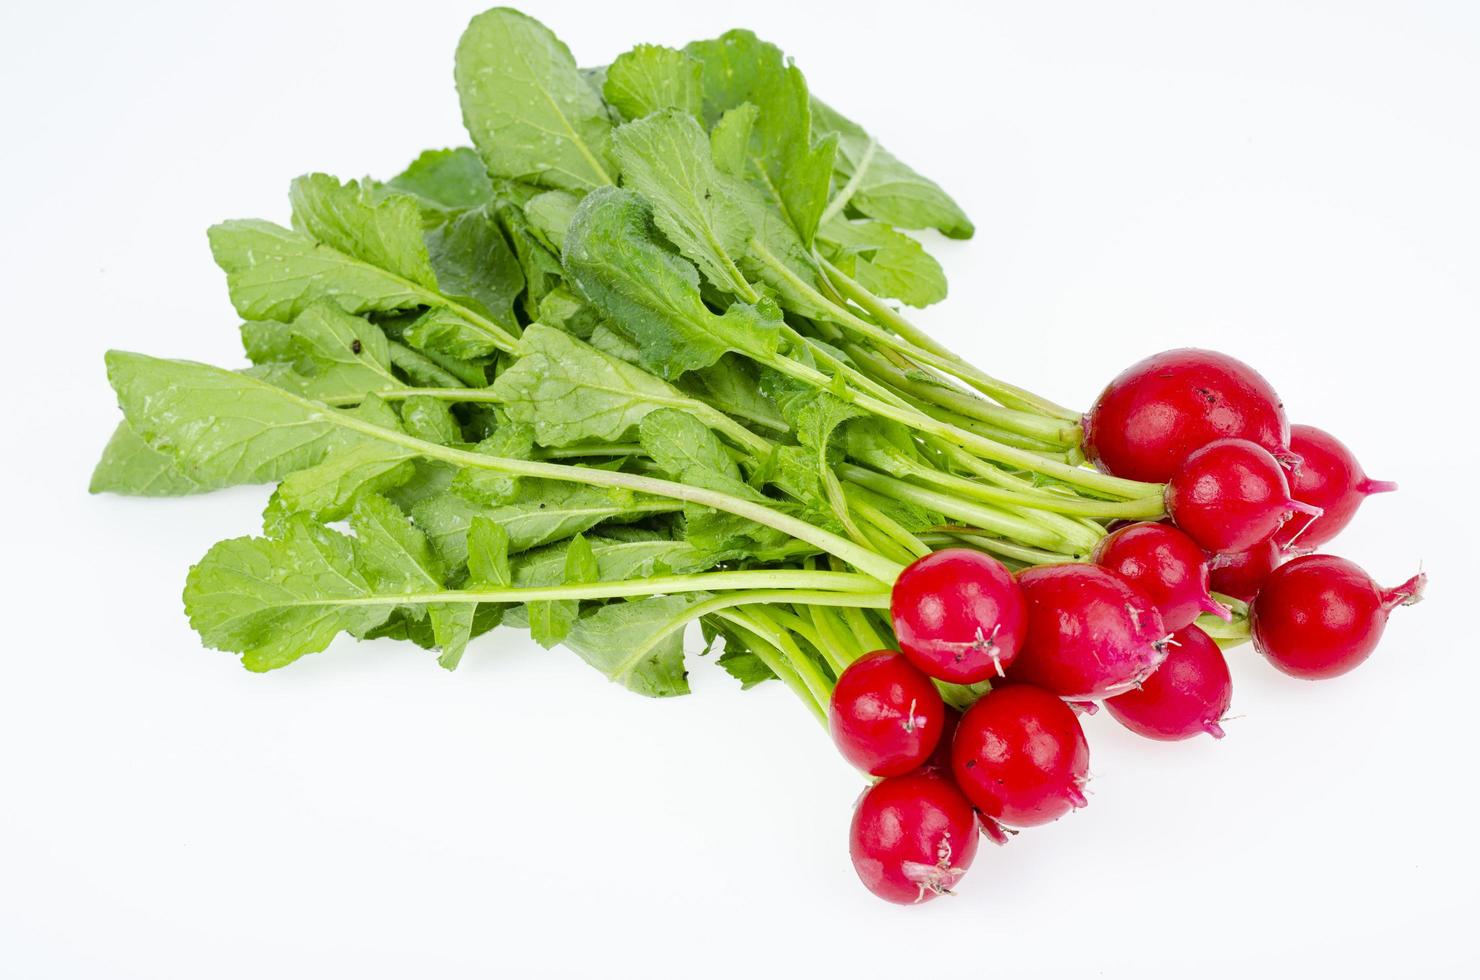 stelletje jonge rode verse radijs met groene bladeren geïsoleerd op een witte achtergrond, dieet vegetarisch menu. studio foto